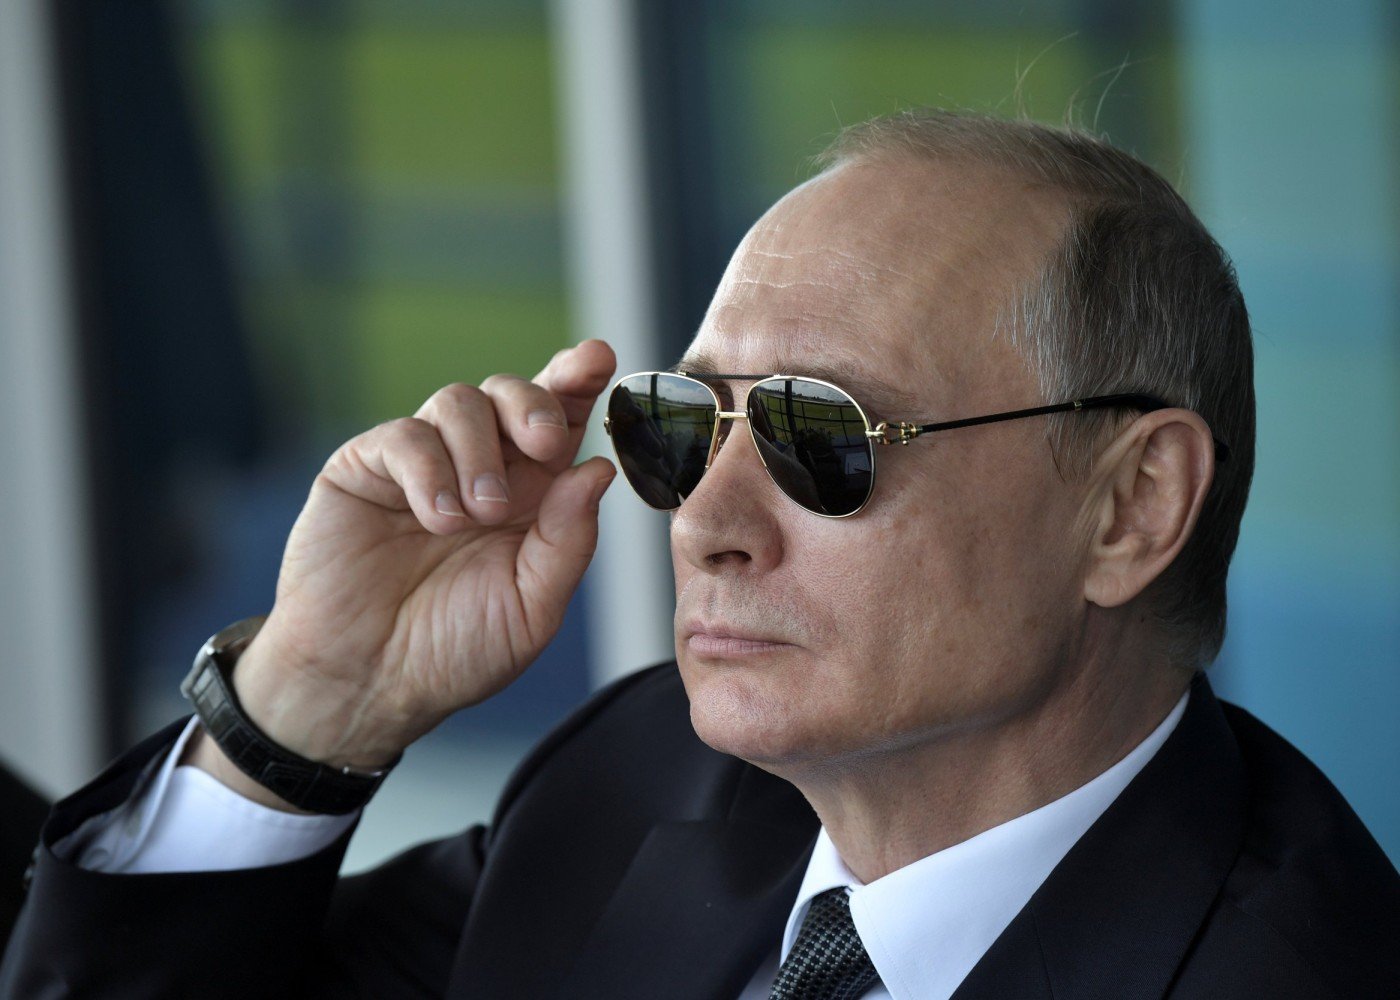 Putin öz maaşını artırdı